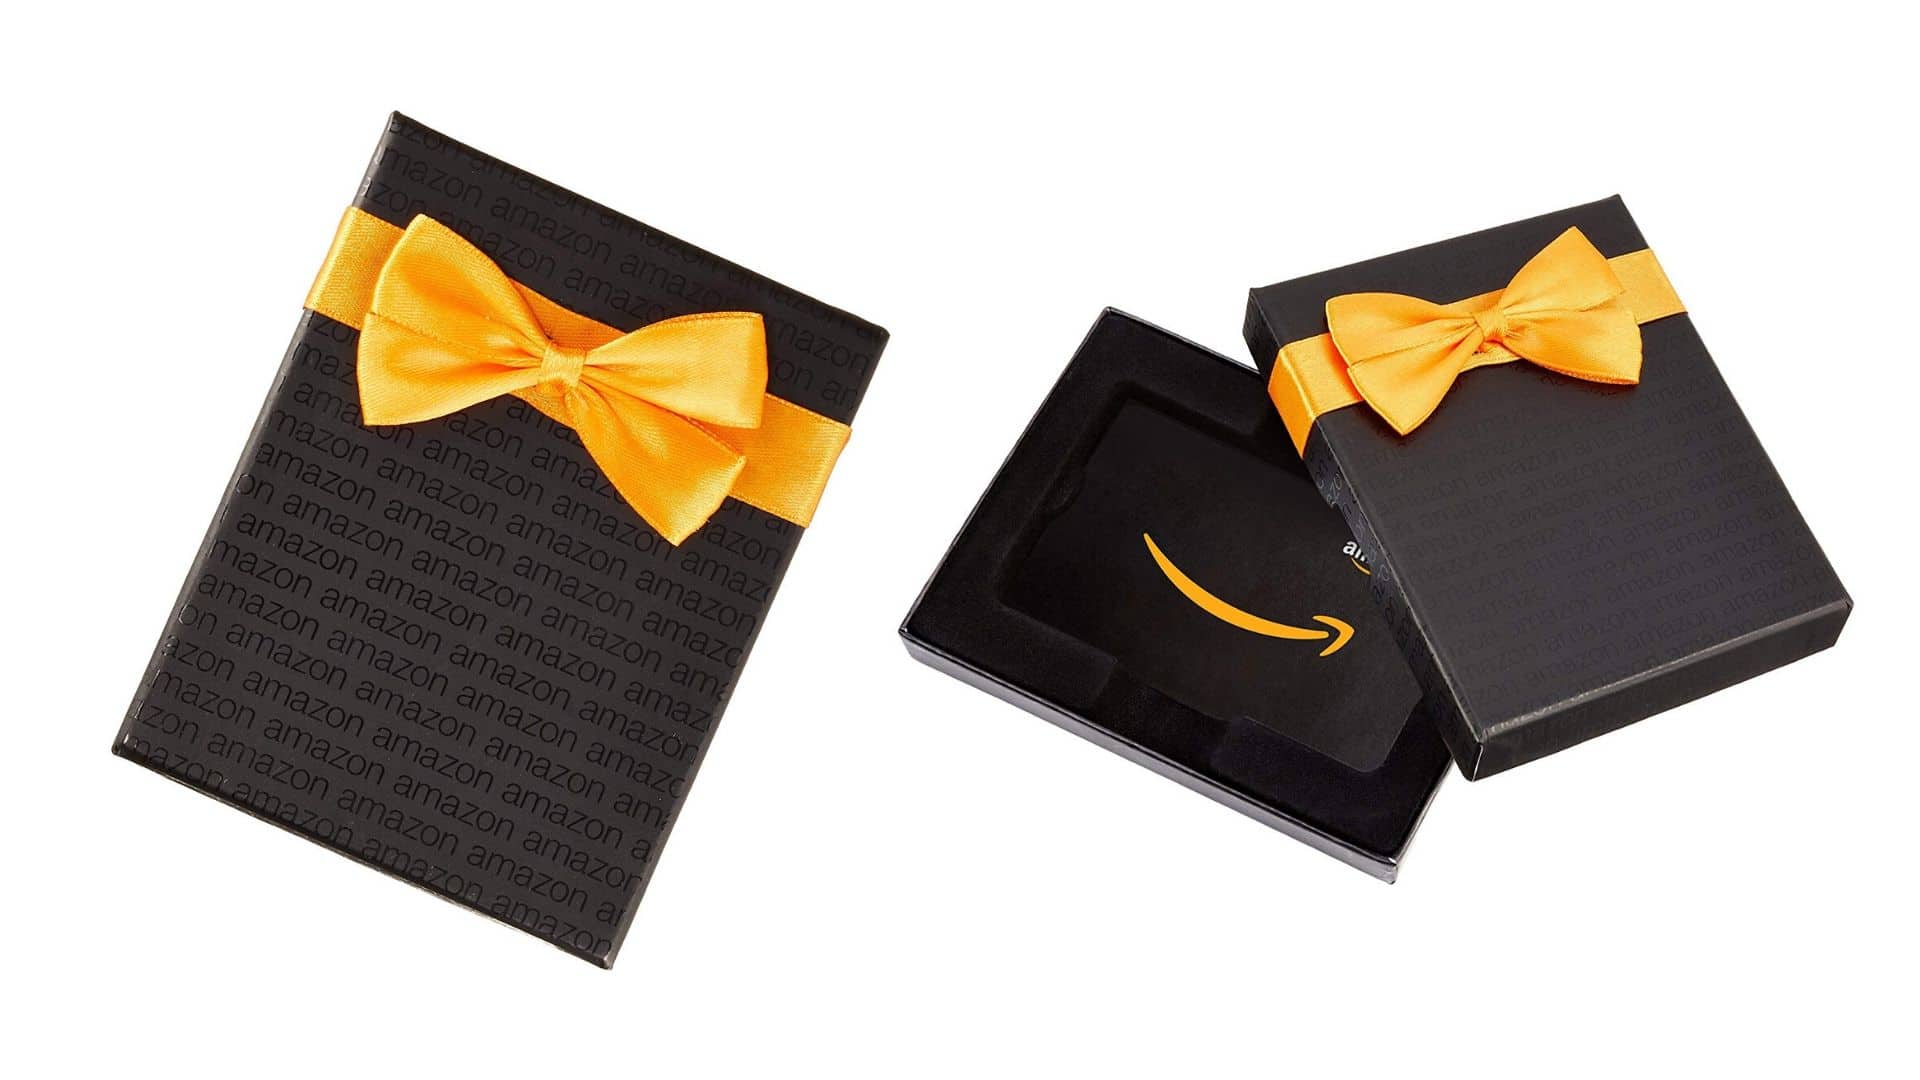 En manque d'idée cadeau, une carte cadeau Amazon fera toujours plaisir